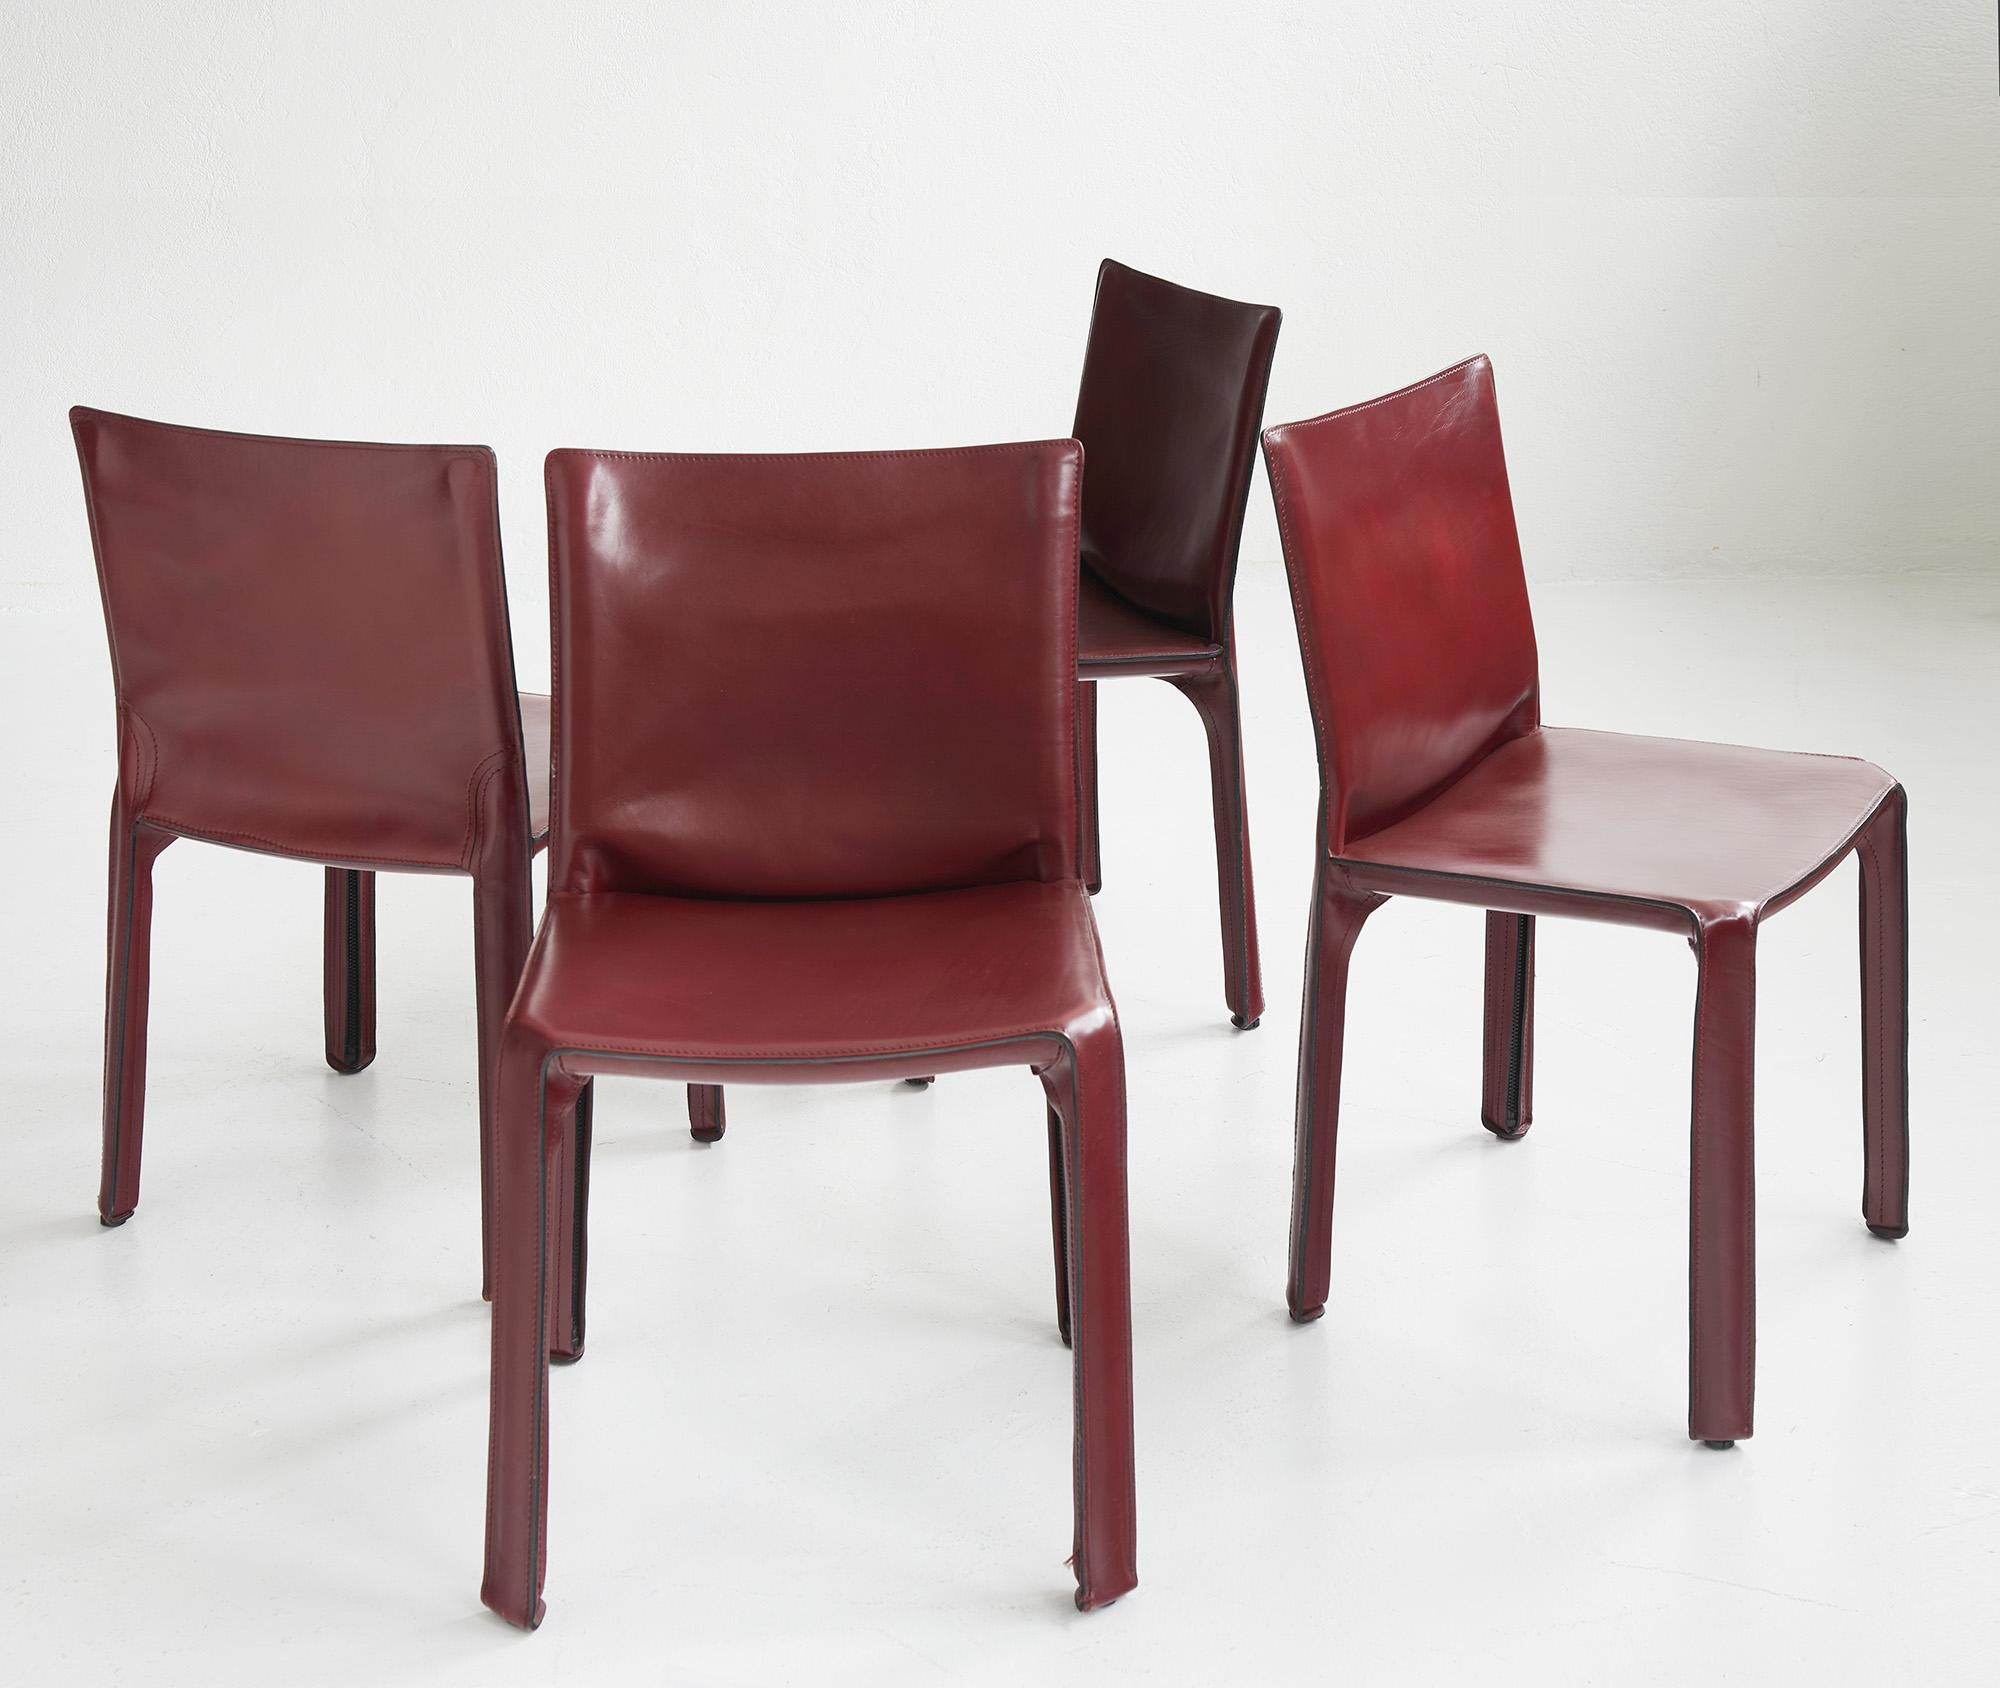 Ensemble de 4 chaises CAB de Mario Bellini par Cassina, Italie 

Le CAB 412 est constitué d'une structure métallique tubulaire recouverte d'une épaisse housse en cuir cousu sellier. Le cuir suit les formes de la structure et est maintenu par des